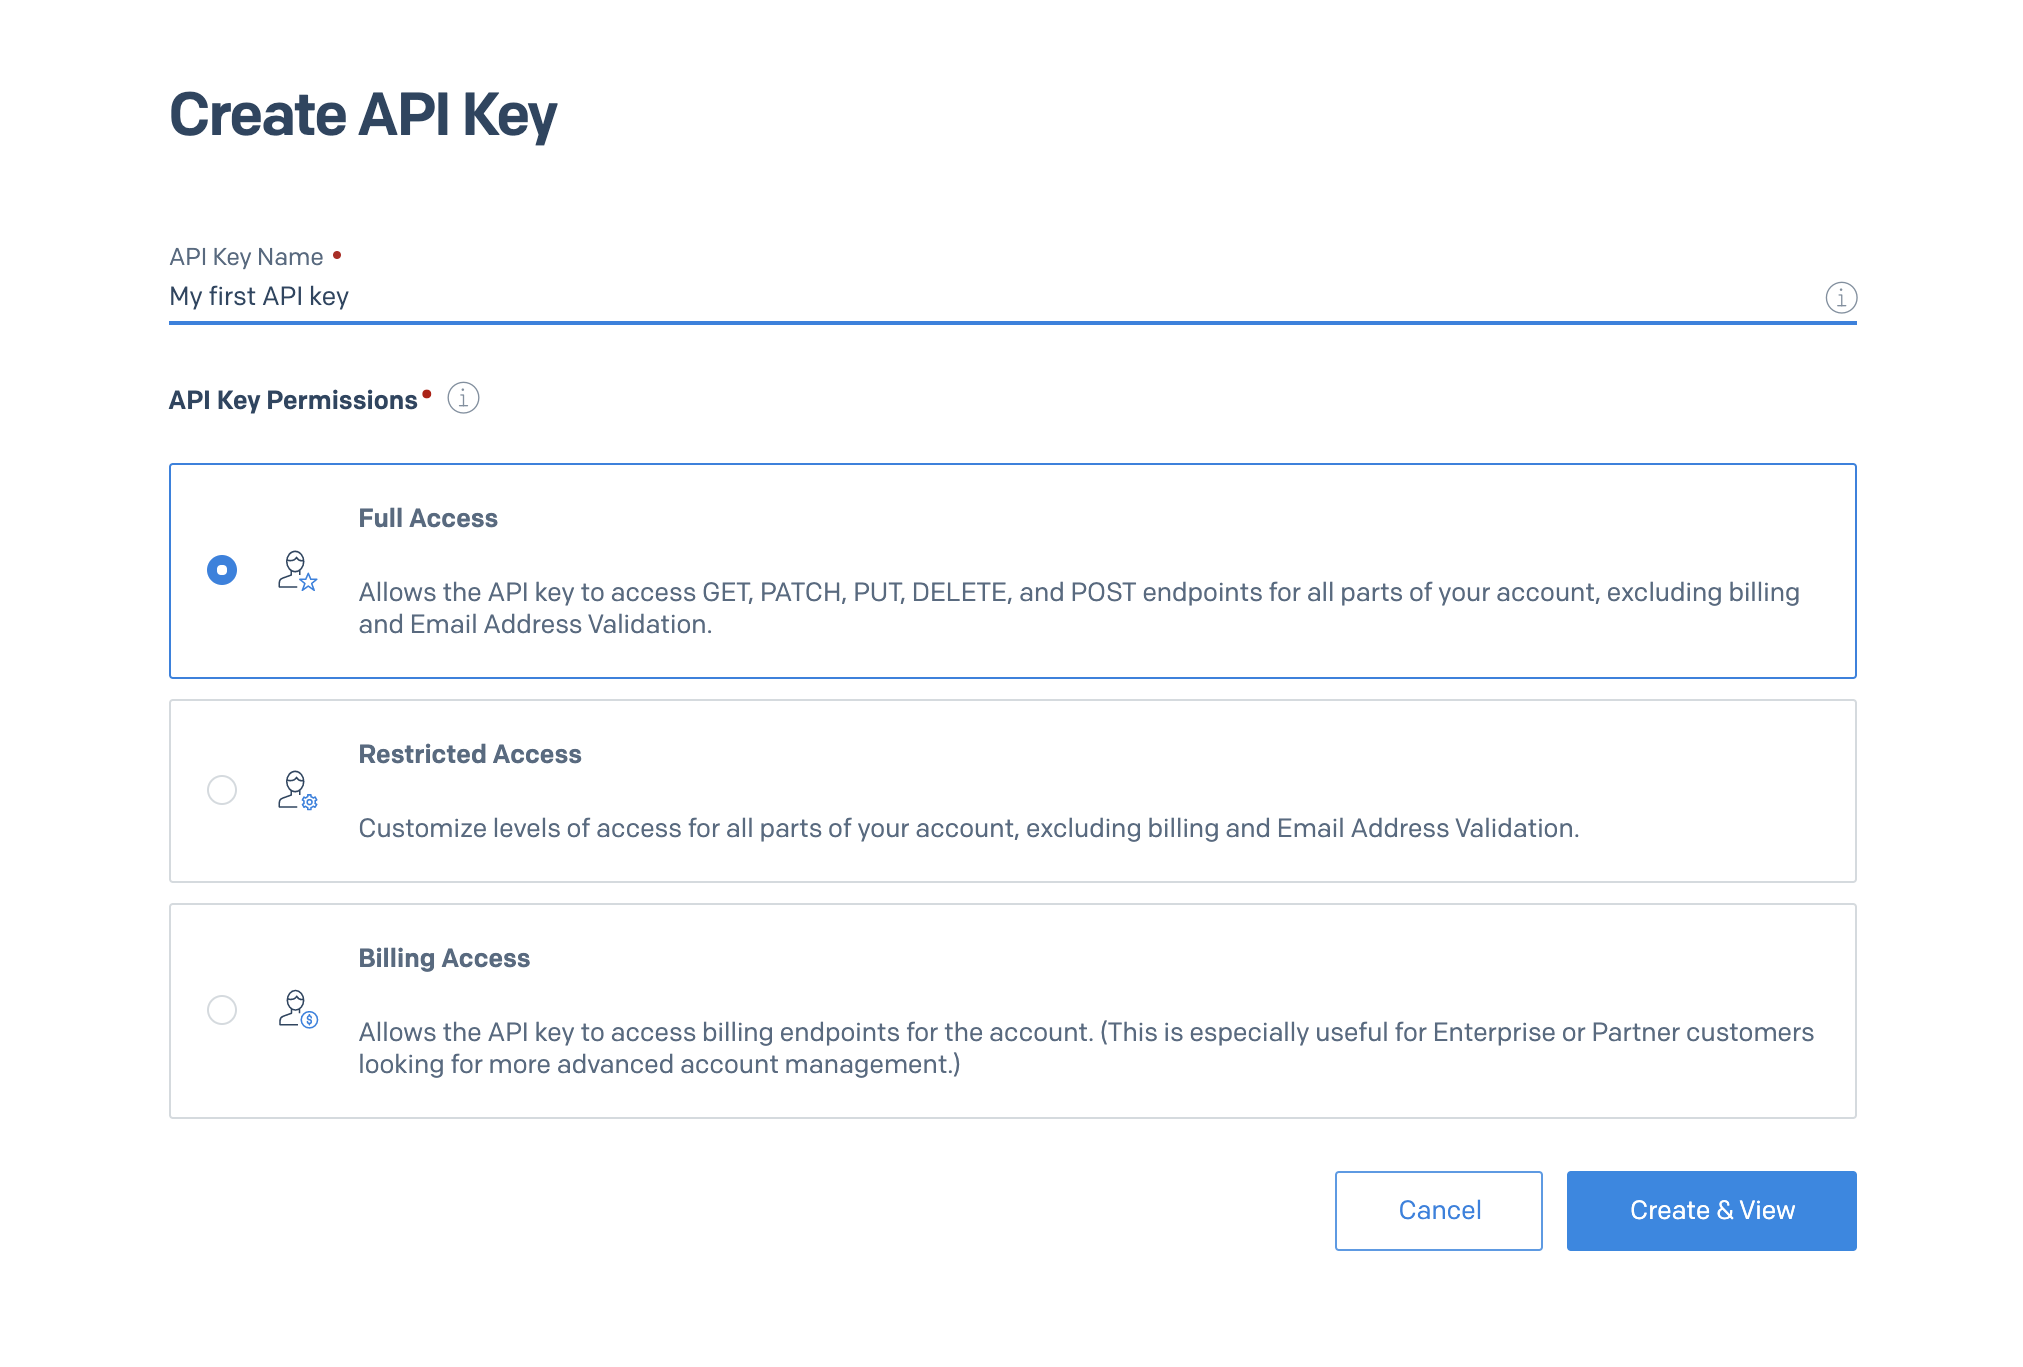 SendGrid API Key creation